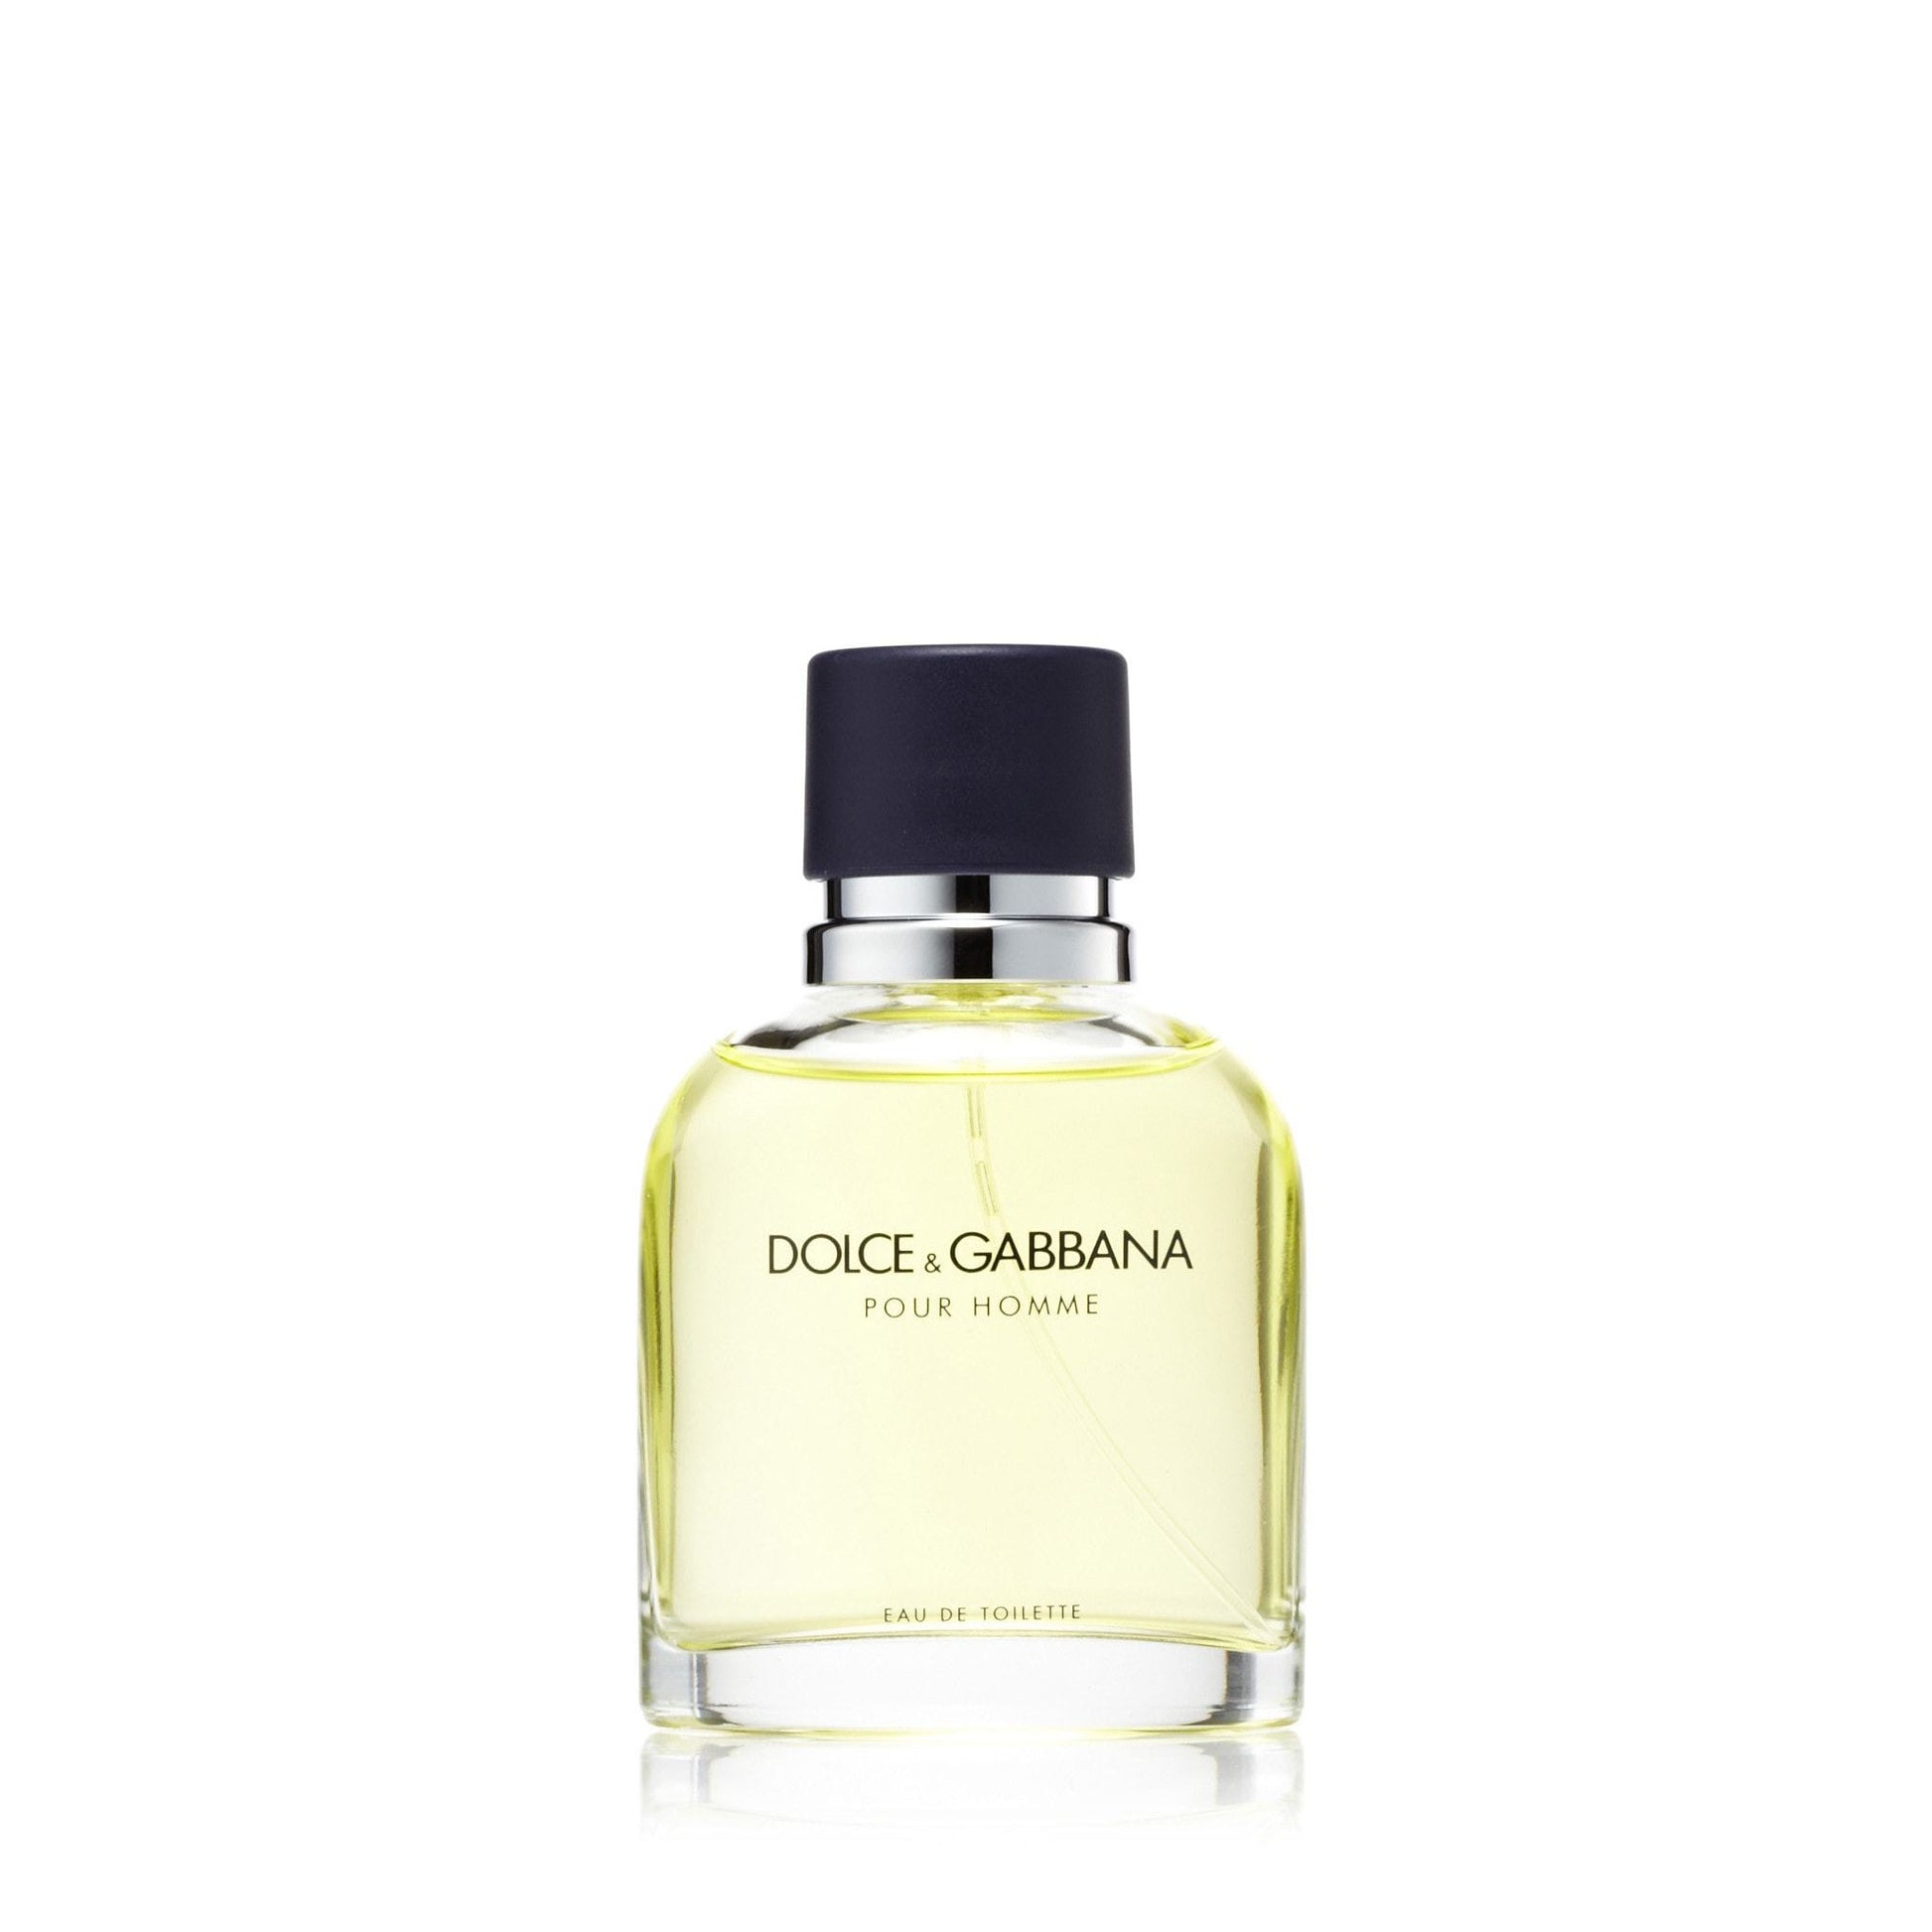 Dolce & Gabbana Eau de Toilette Spray for Men by D&G, Product image 3